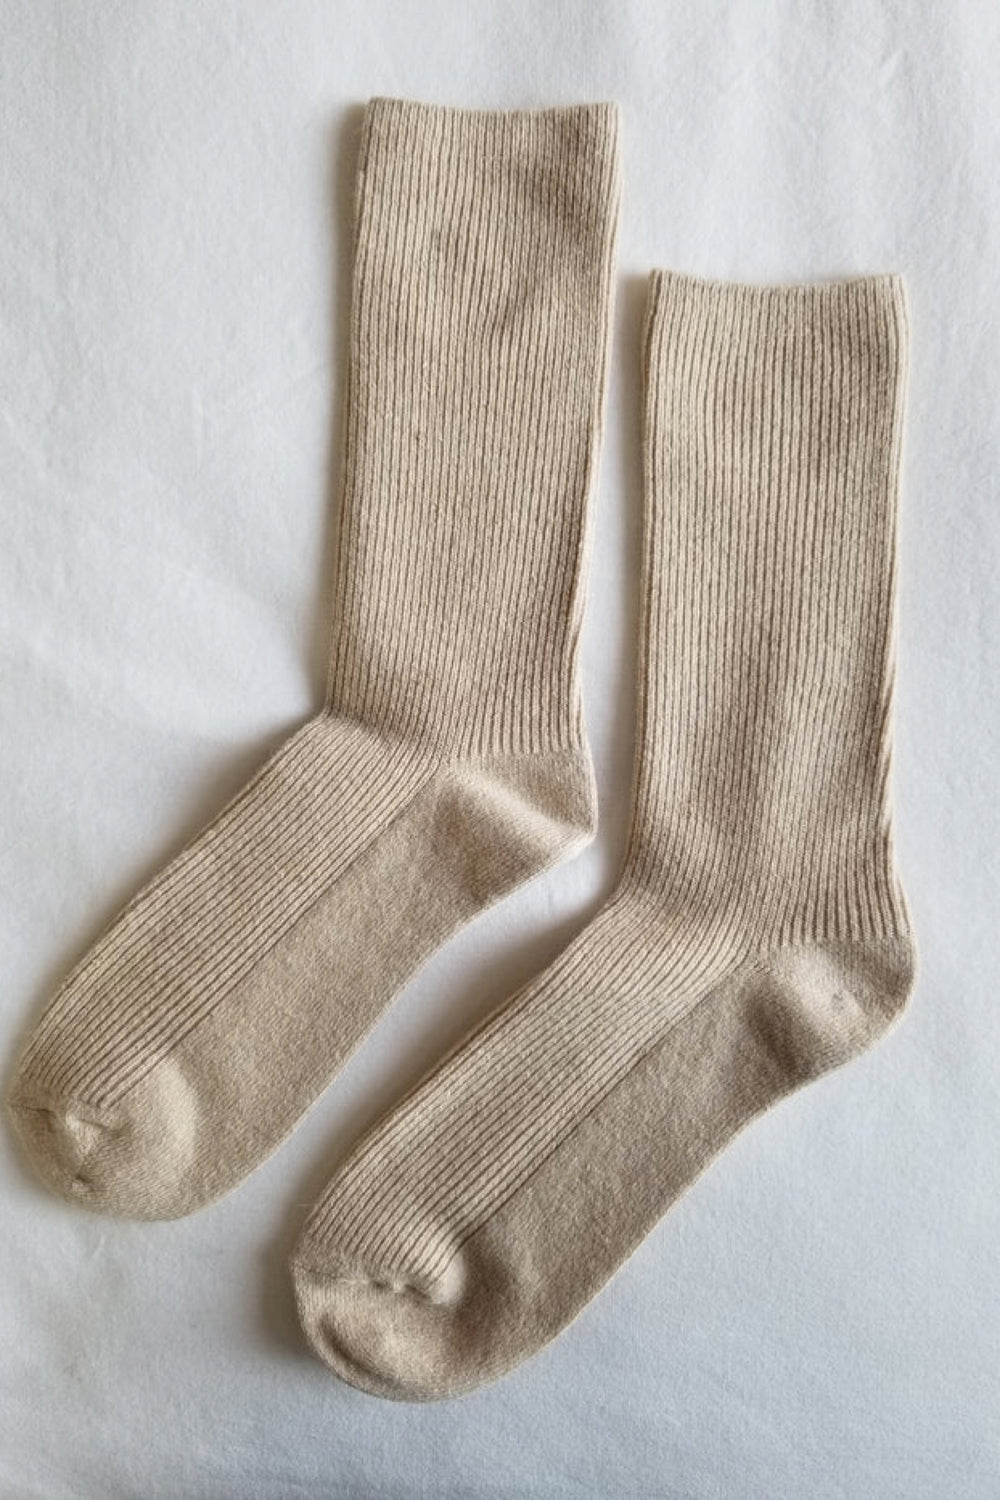 Oyster Grandpa Socks